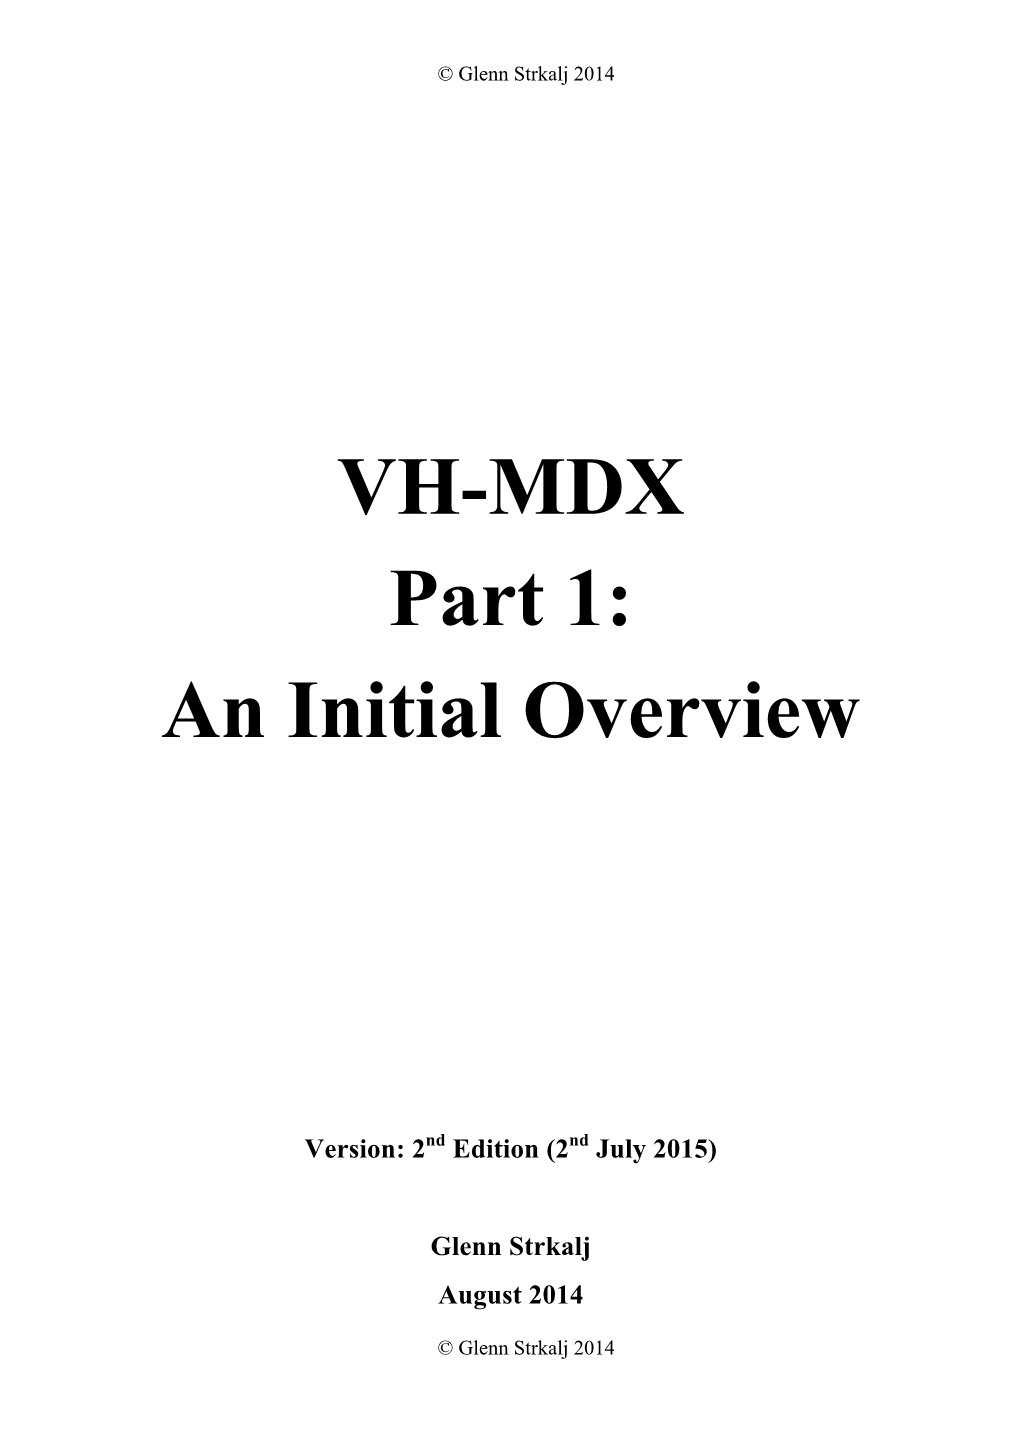 VH-MDX Part 1: an Initial Overview